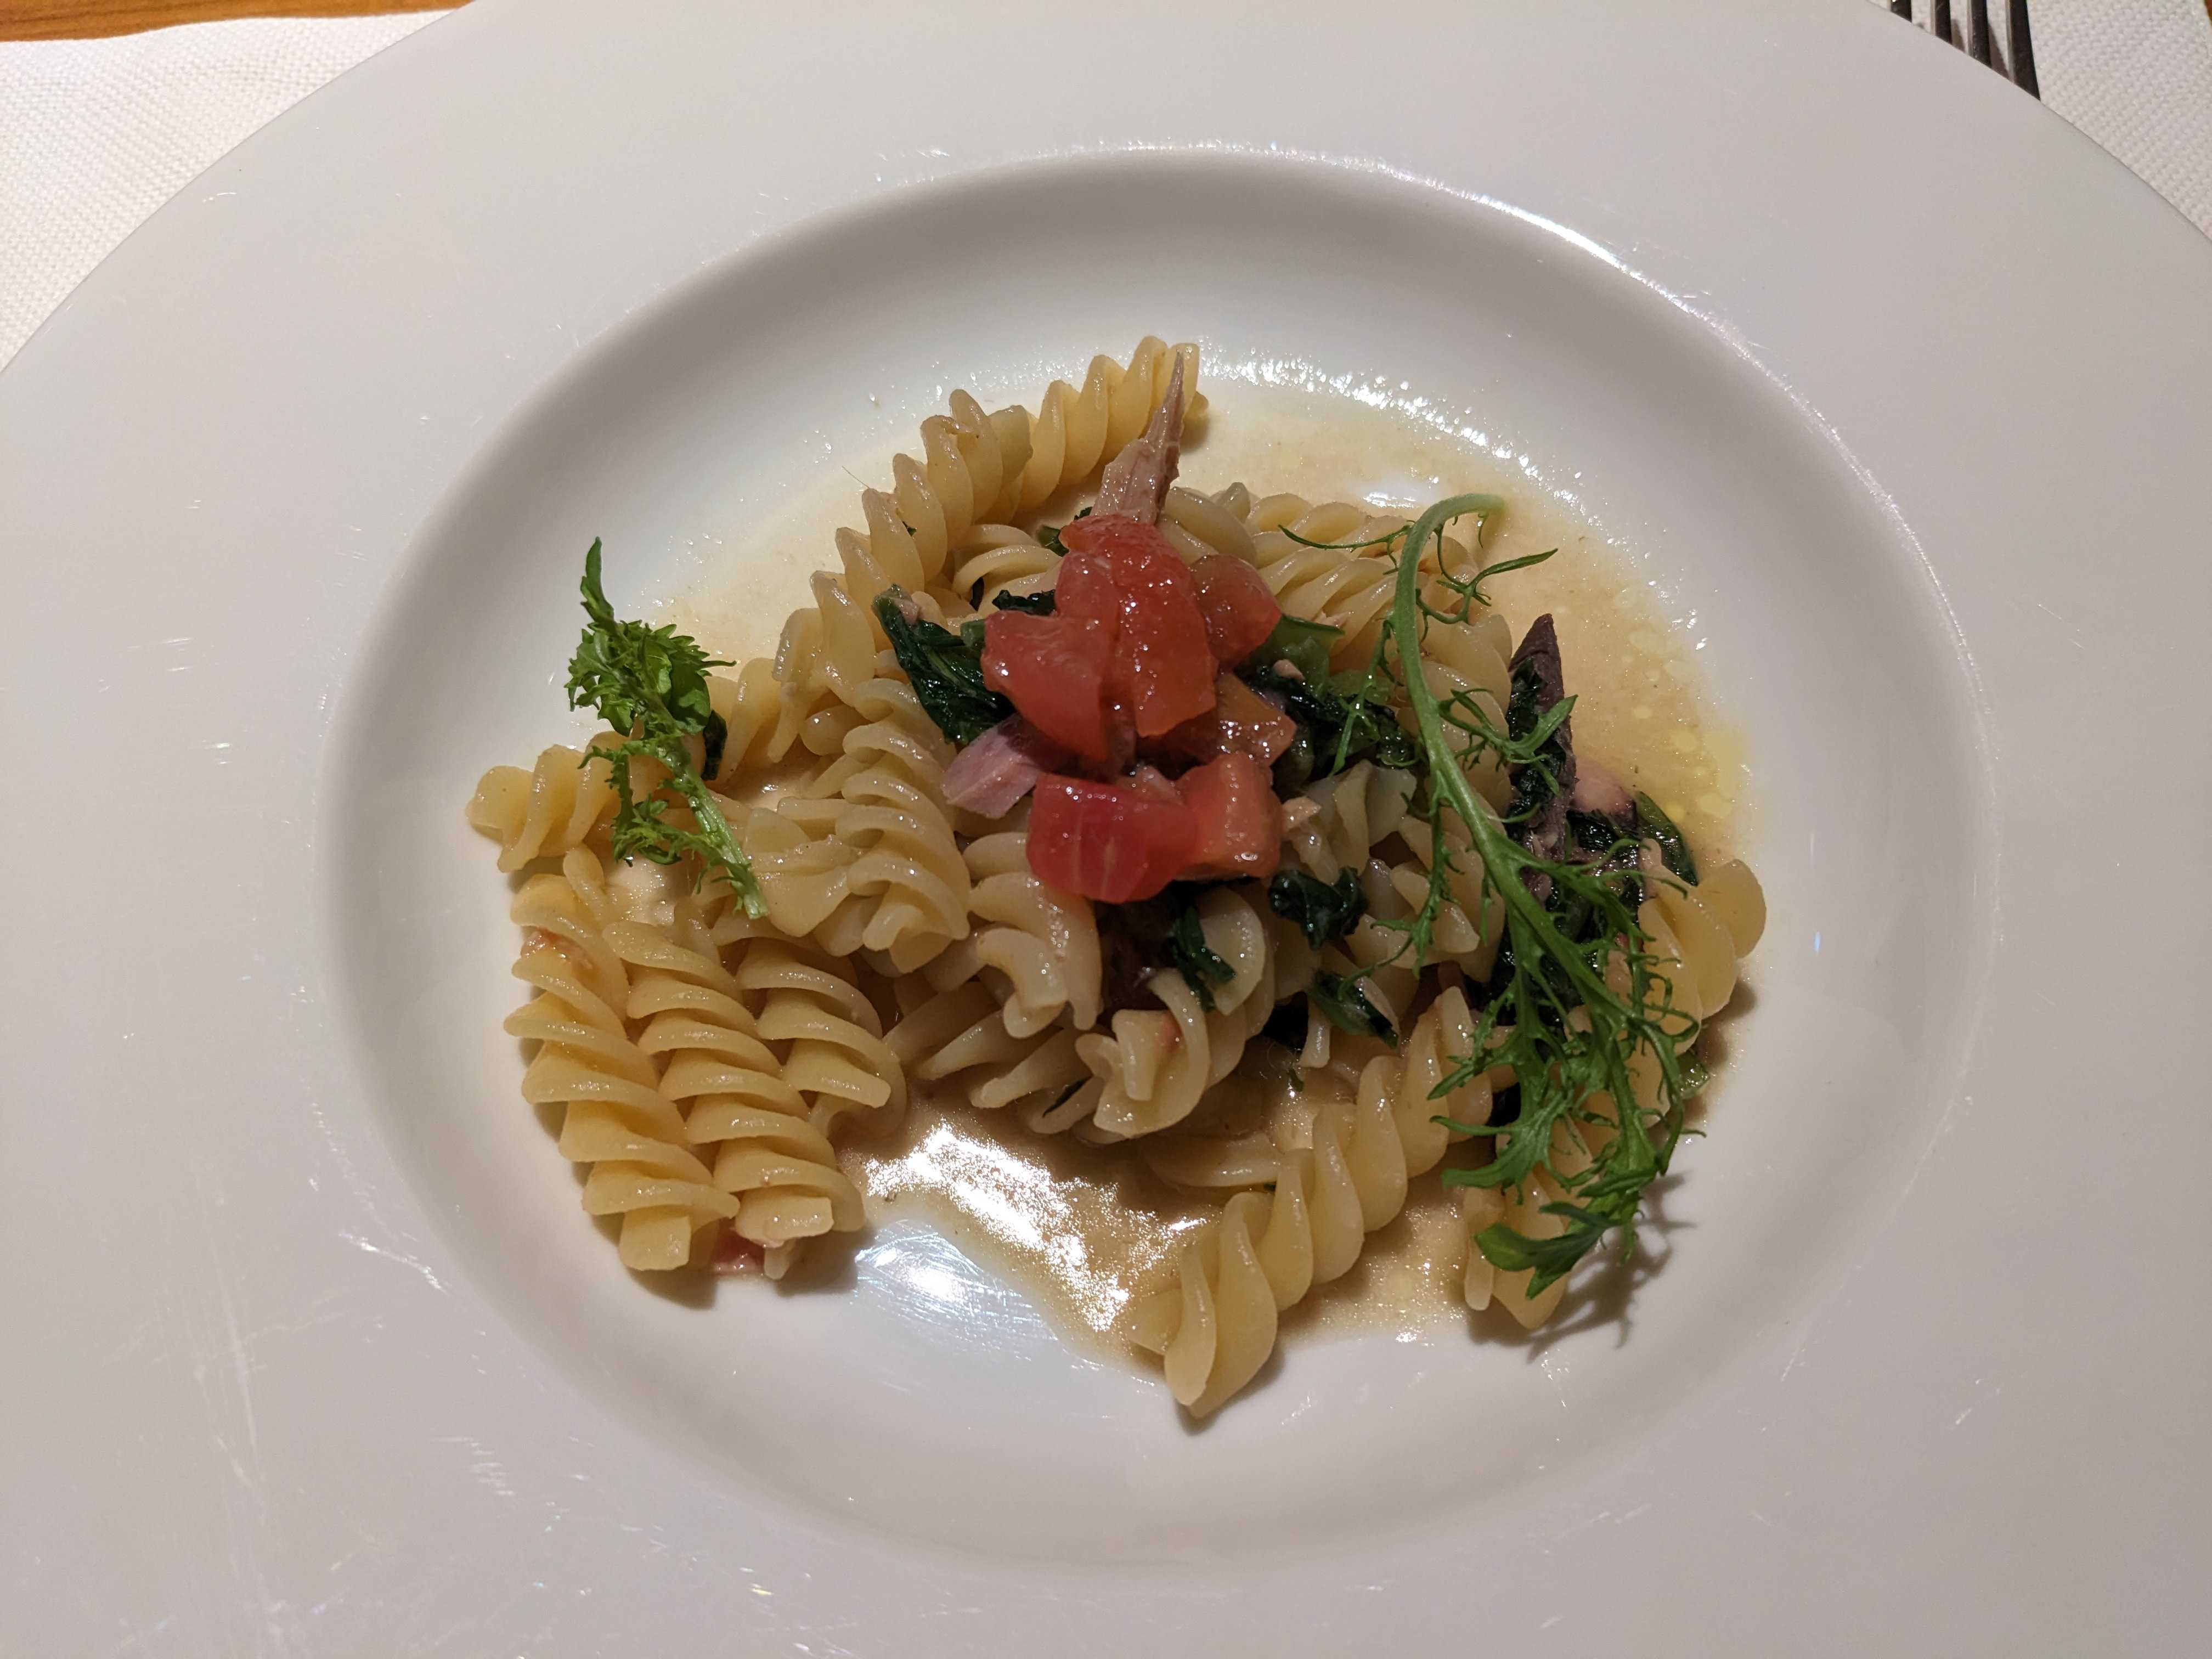 クッチーナセラーレのイタリアンディナー なまり節と塩漬島菜のフジッリ